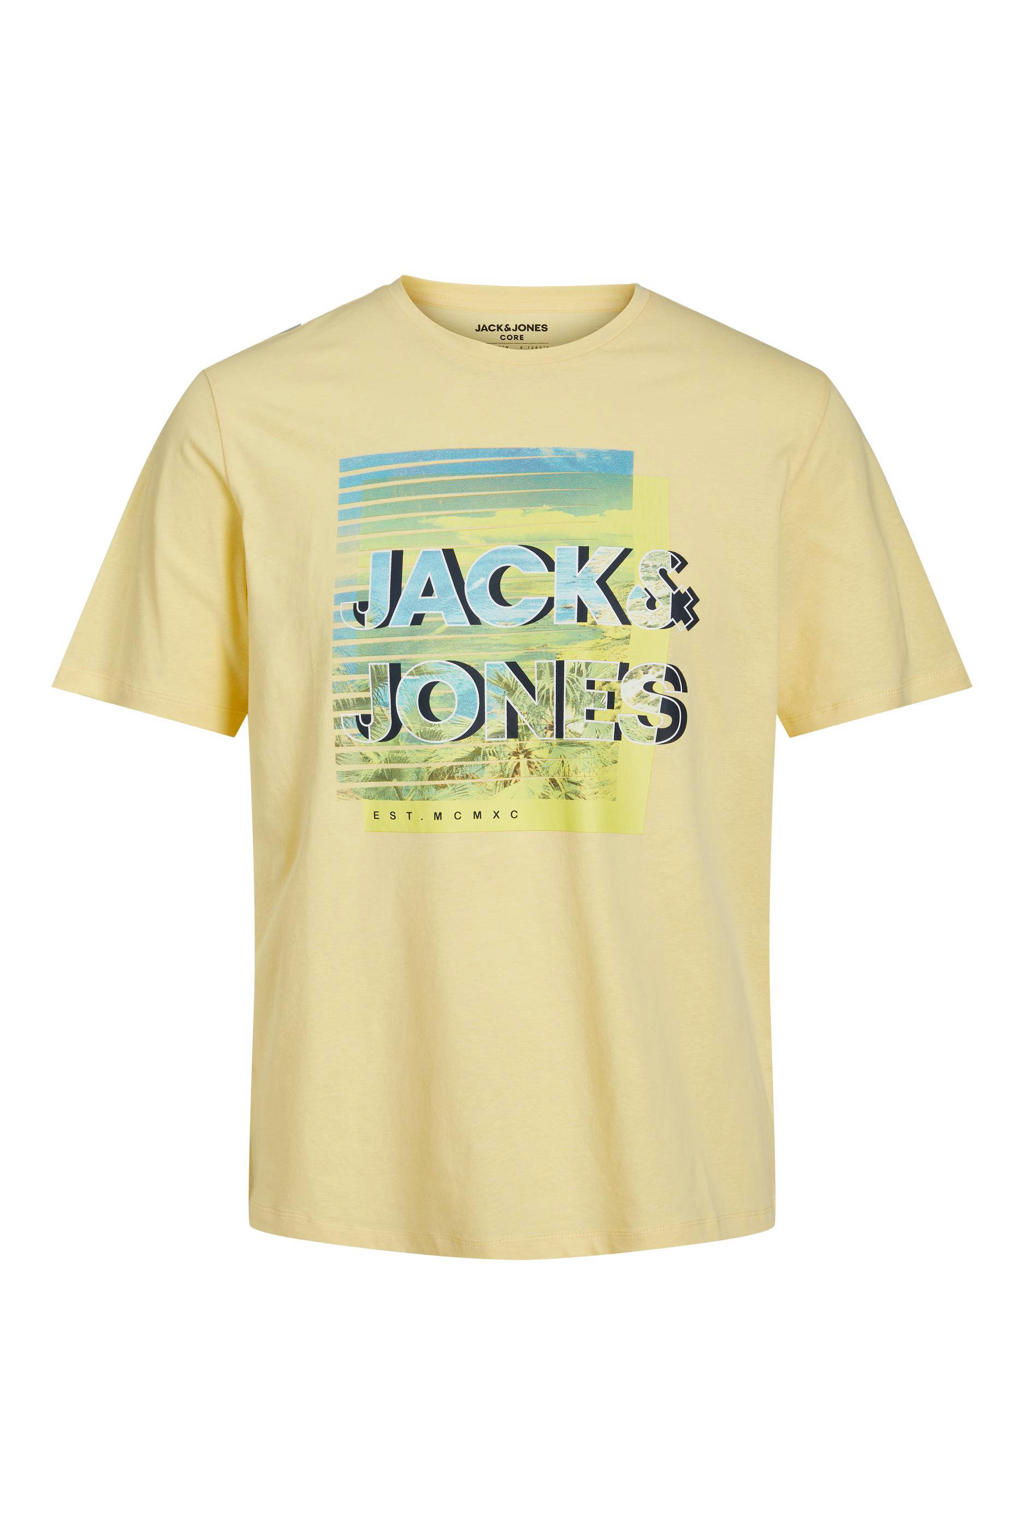 Gele heren JACK & JONES CORE regular fit T-shirt van katoen met printopdruk, korte mouwen en ronde hals